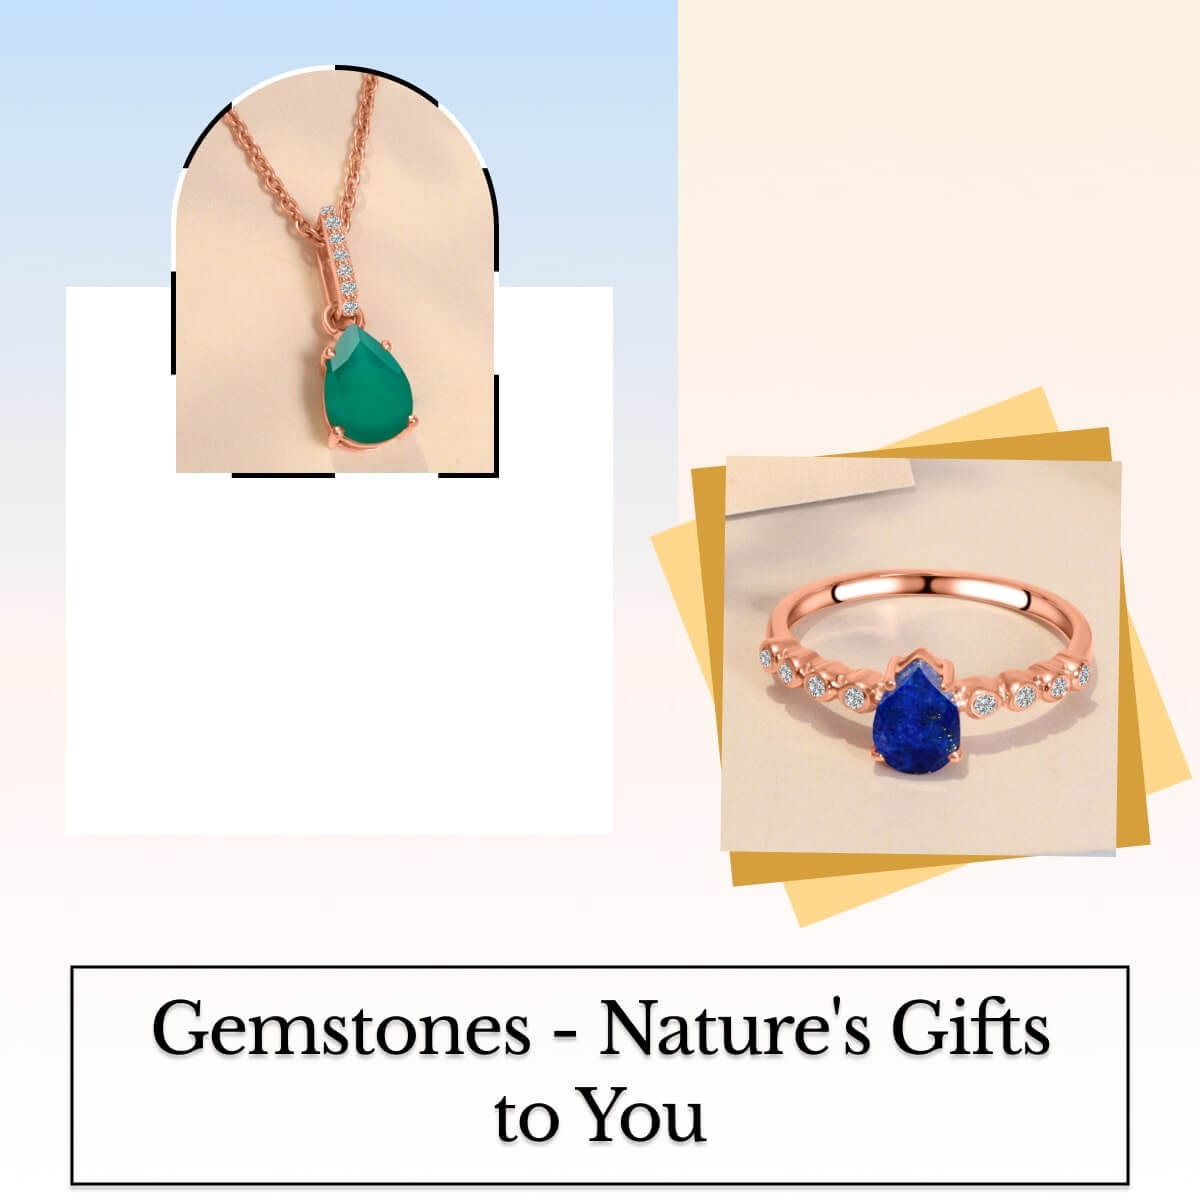 Benefits of Wearing Gemstone